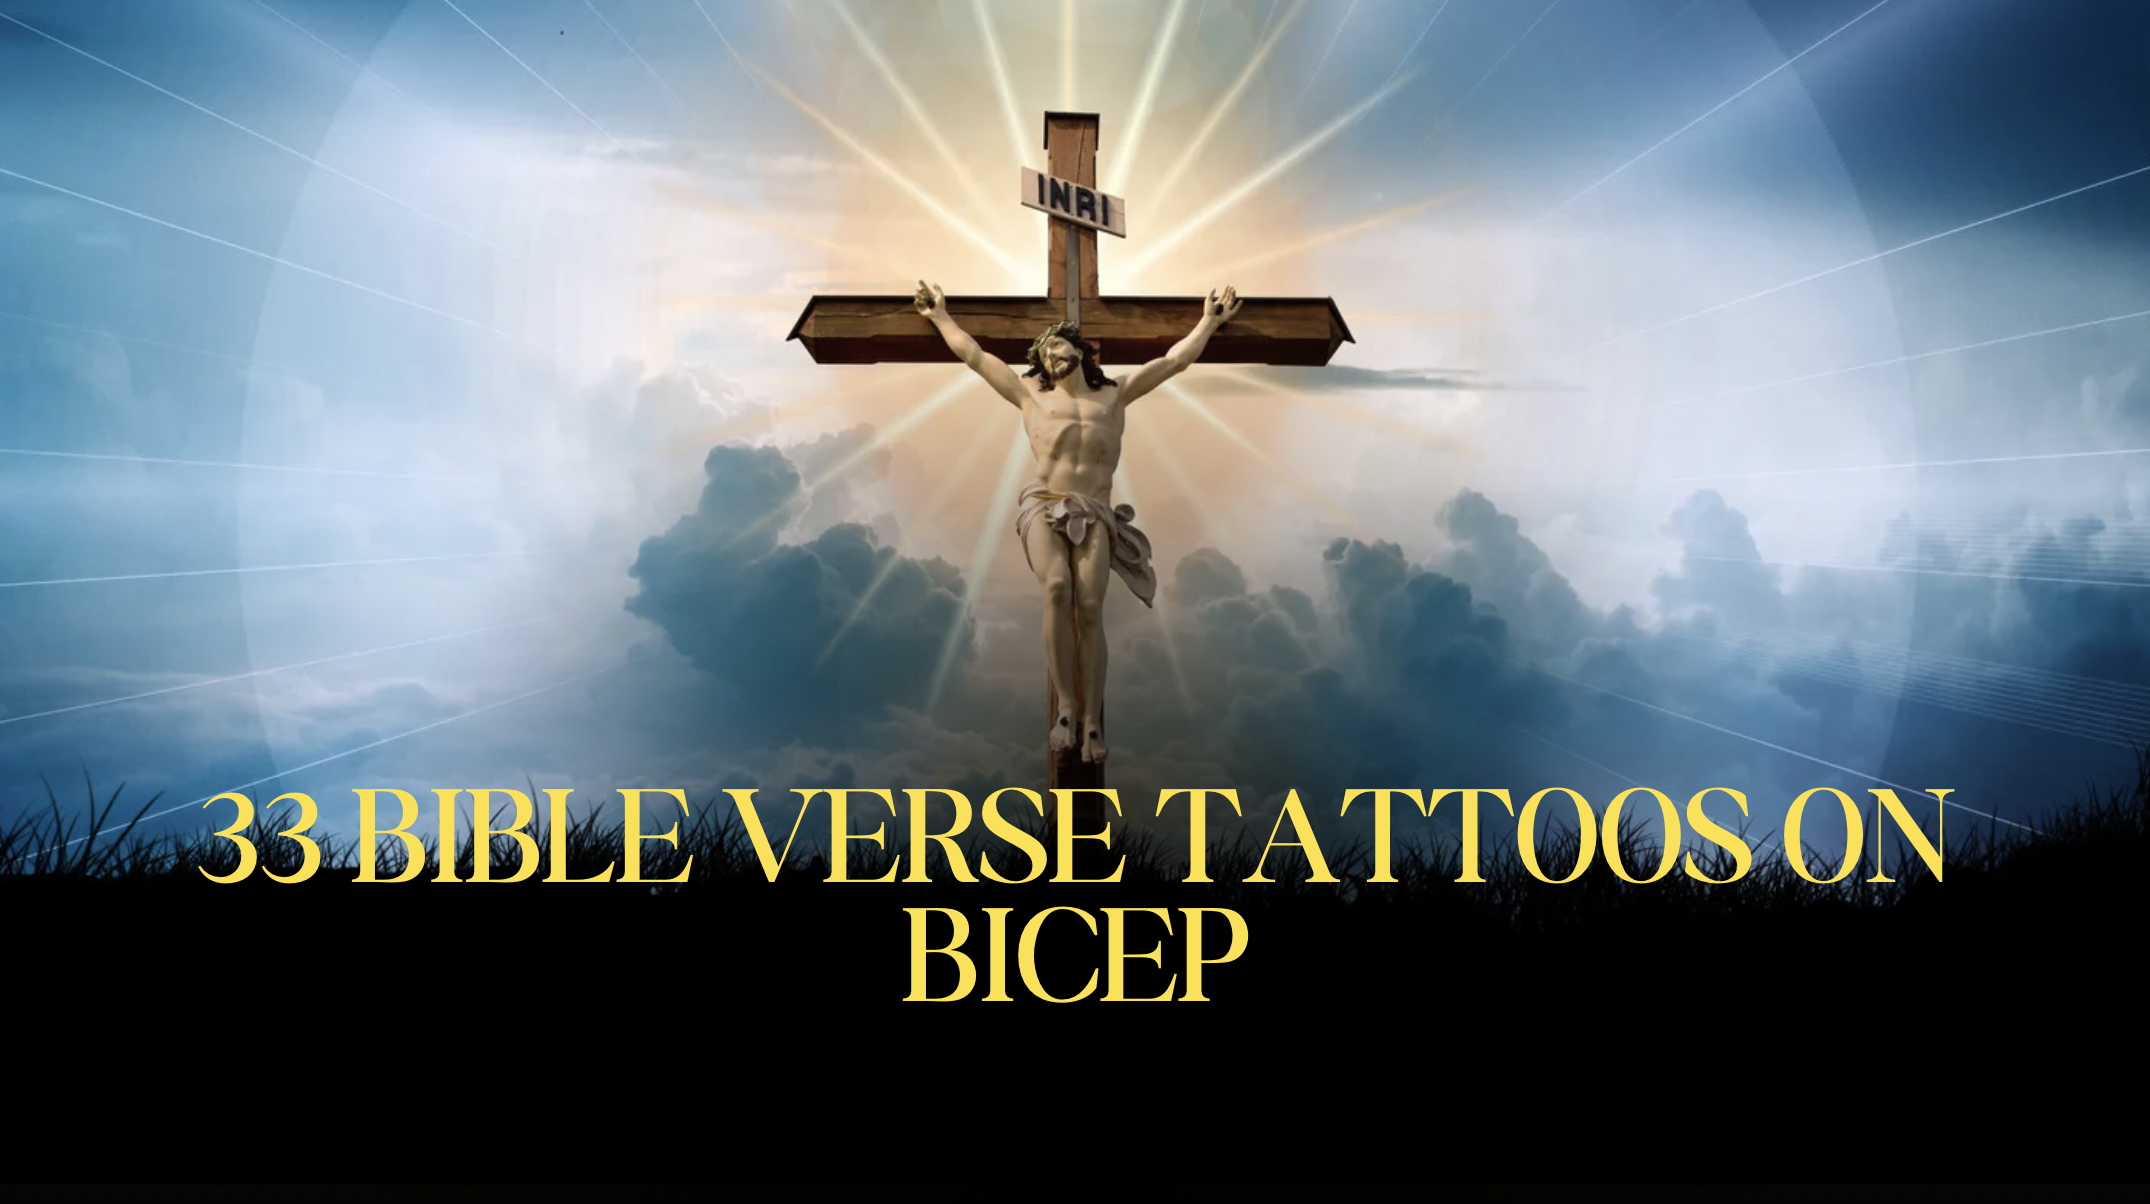 33 Bible Verse Tattoos on Bicep